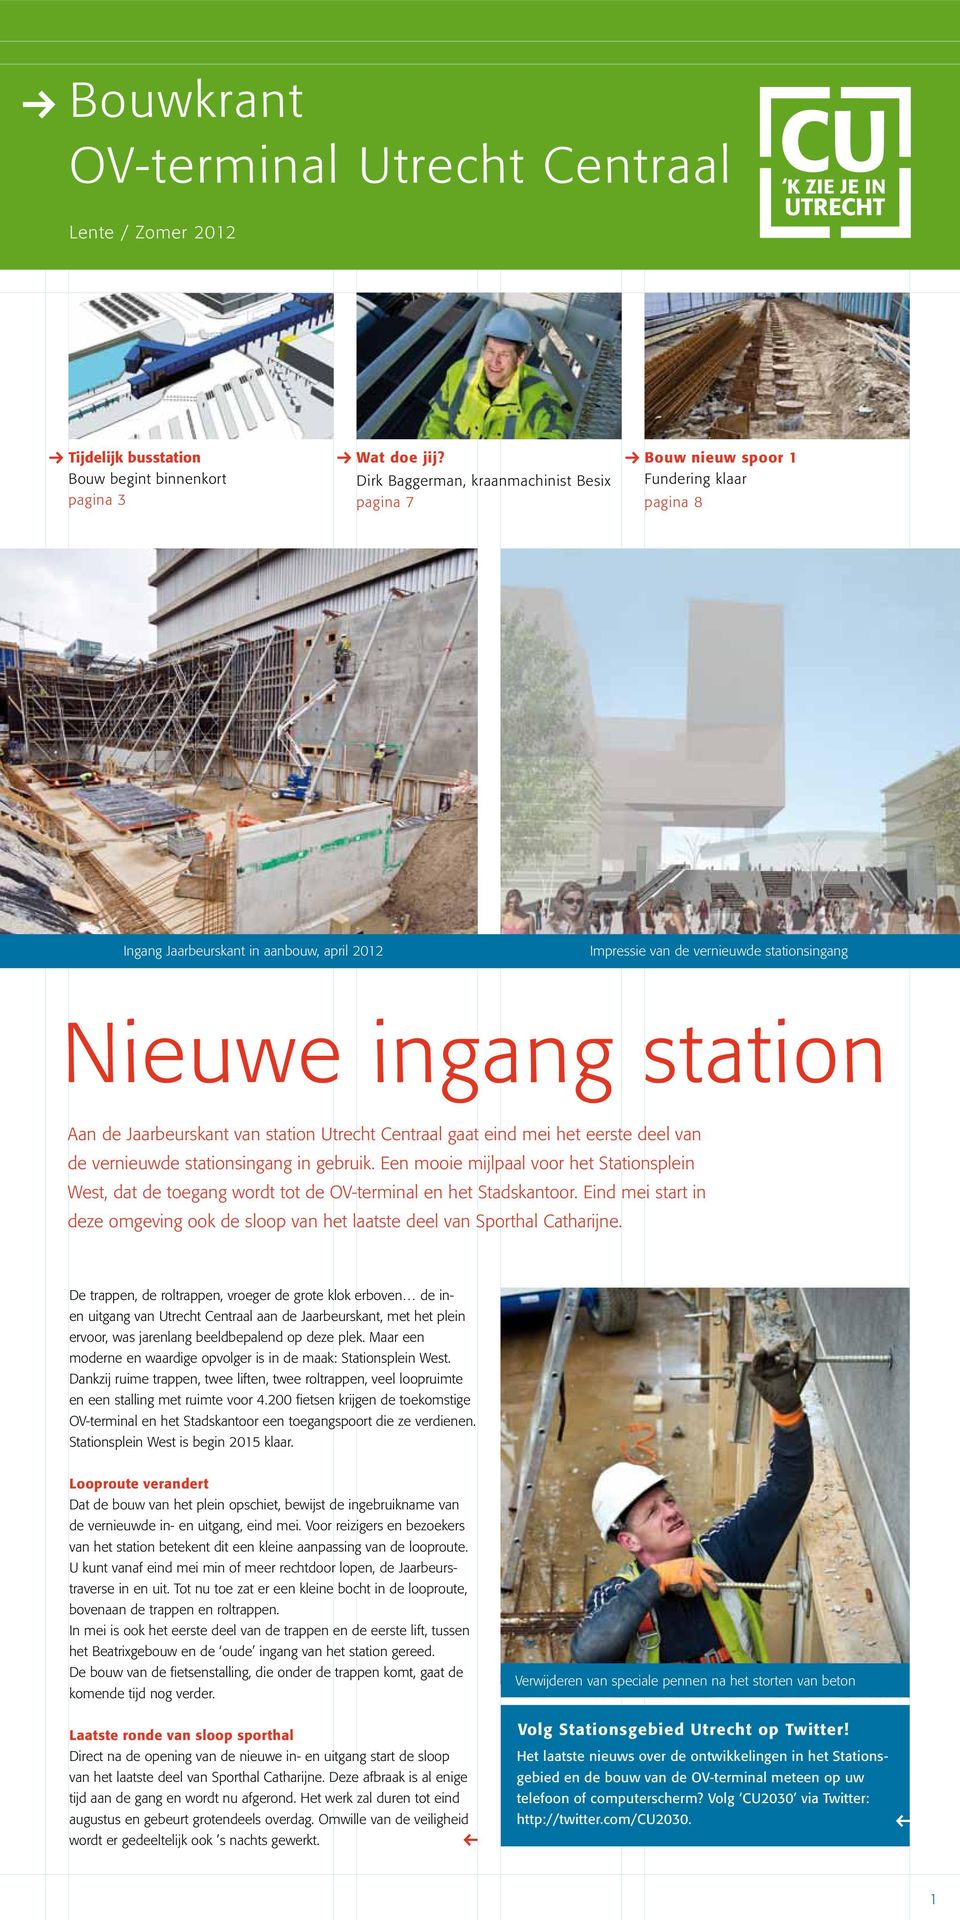 Aan de Jaarbeurskant van station Utrecht Centraal gaat eind mei het eerste deel van de vernieuwde stationsingang in gebruik.